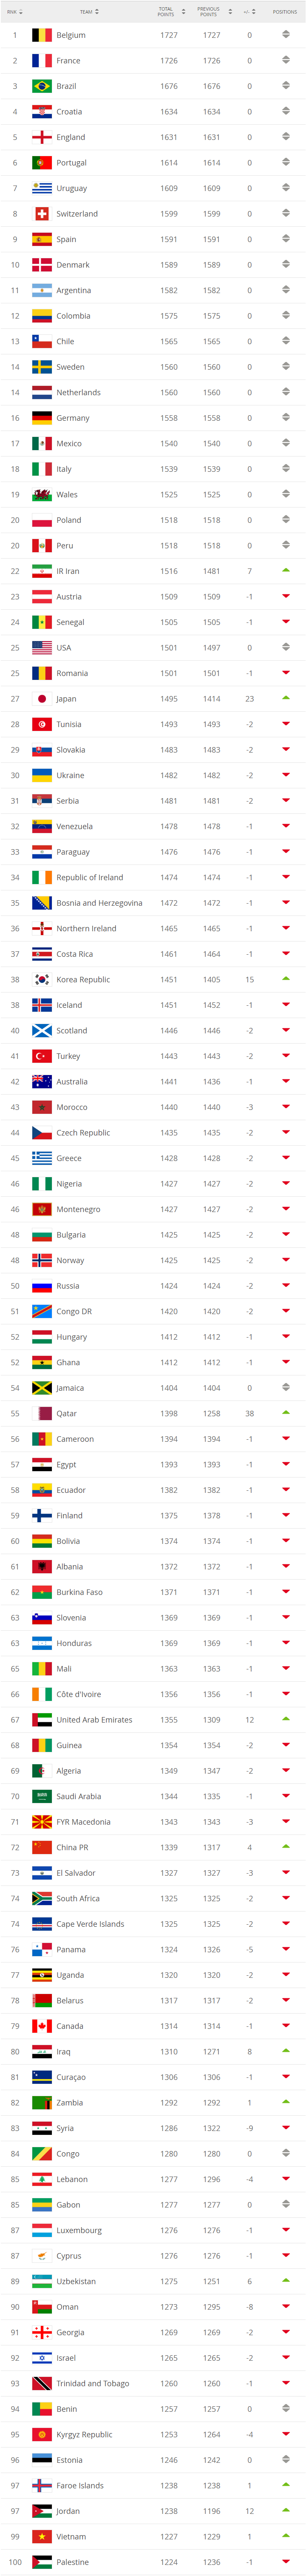 FIFA Ranking 1902.png